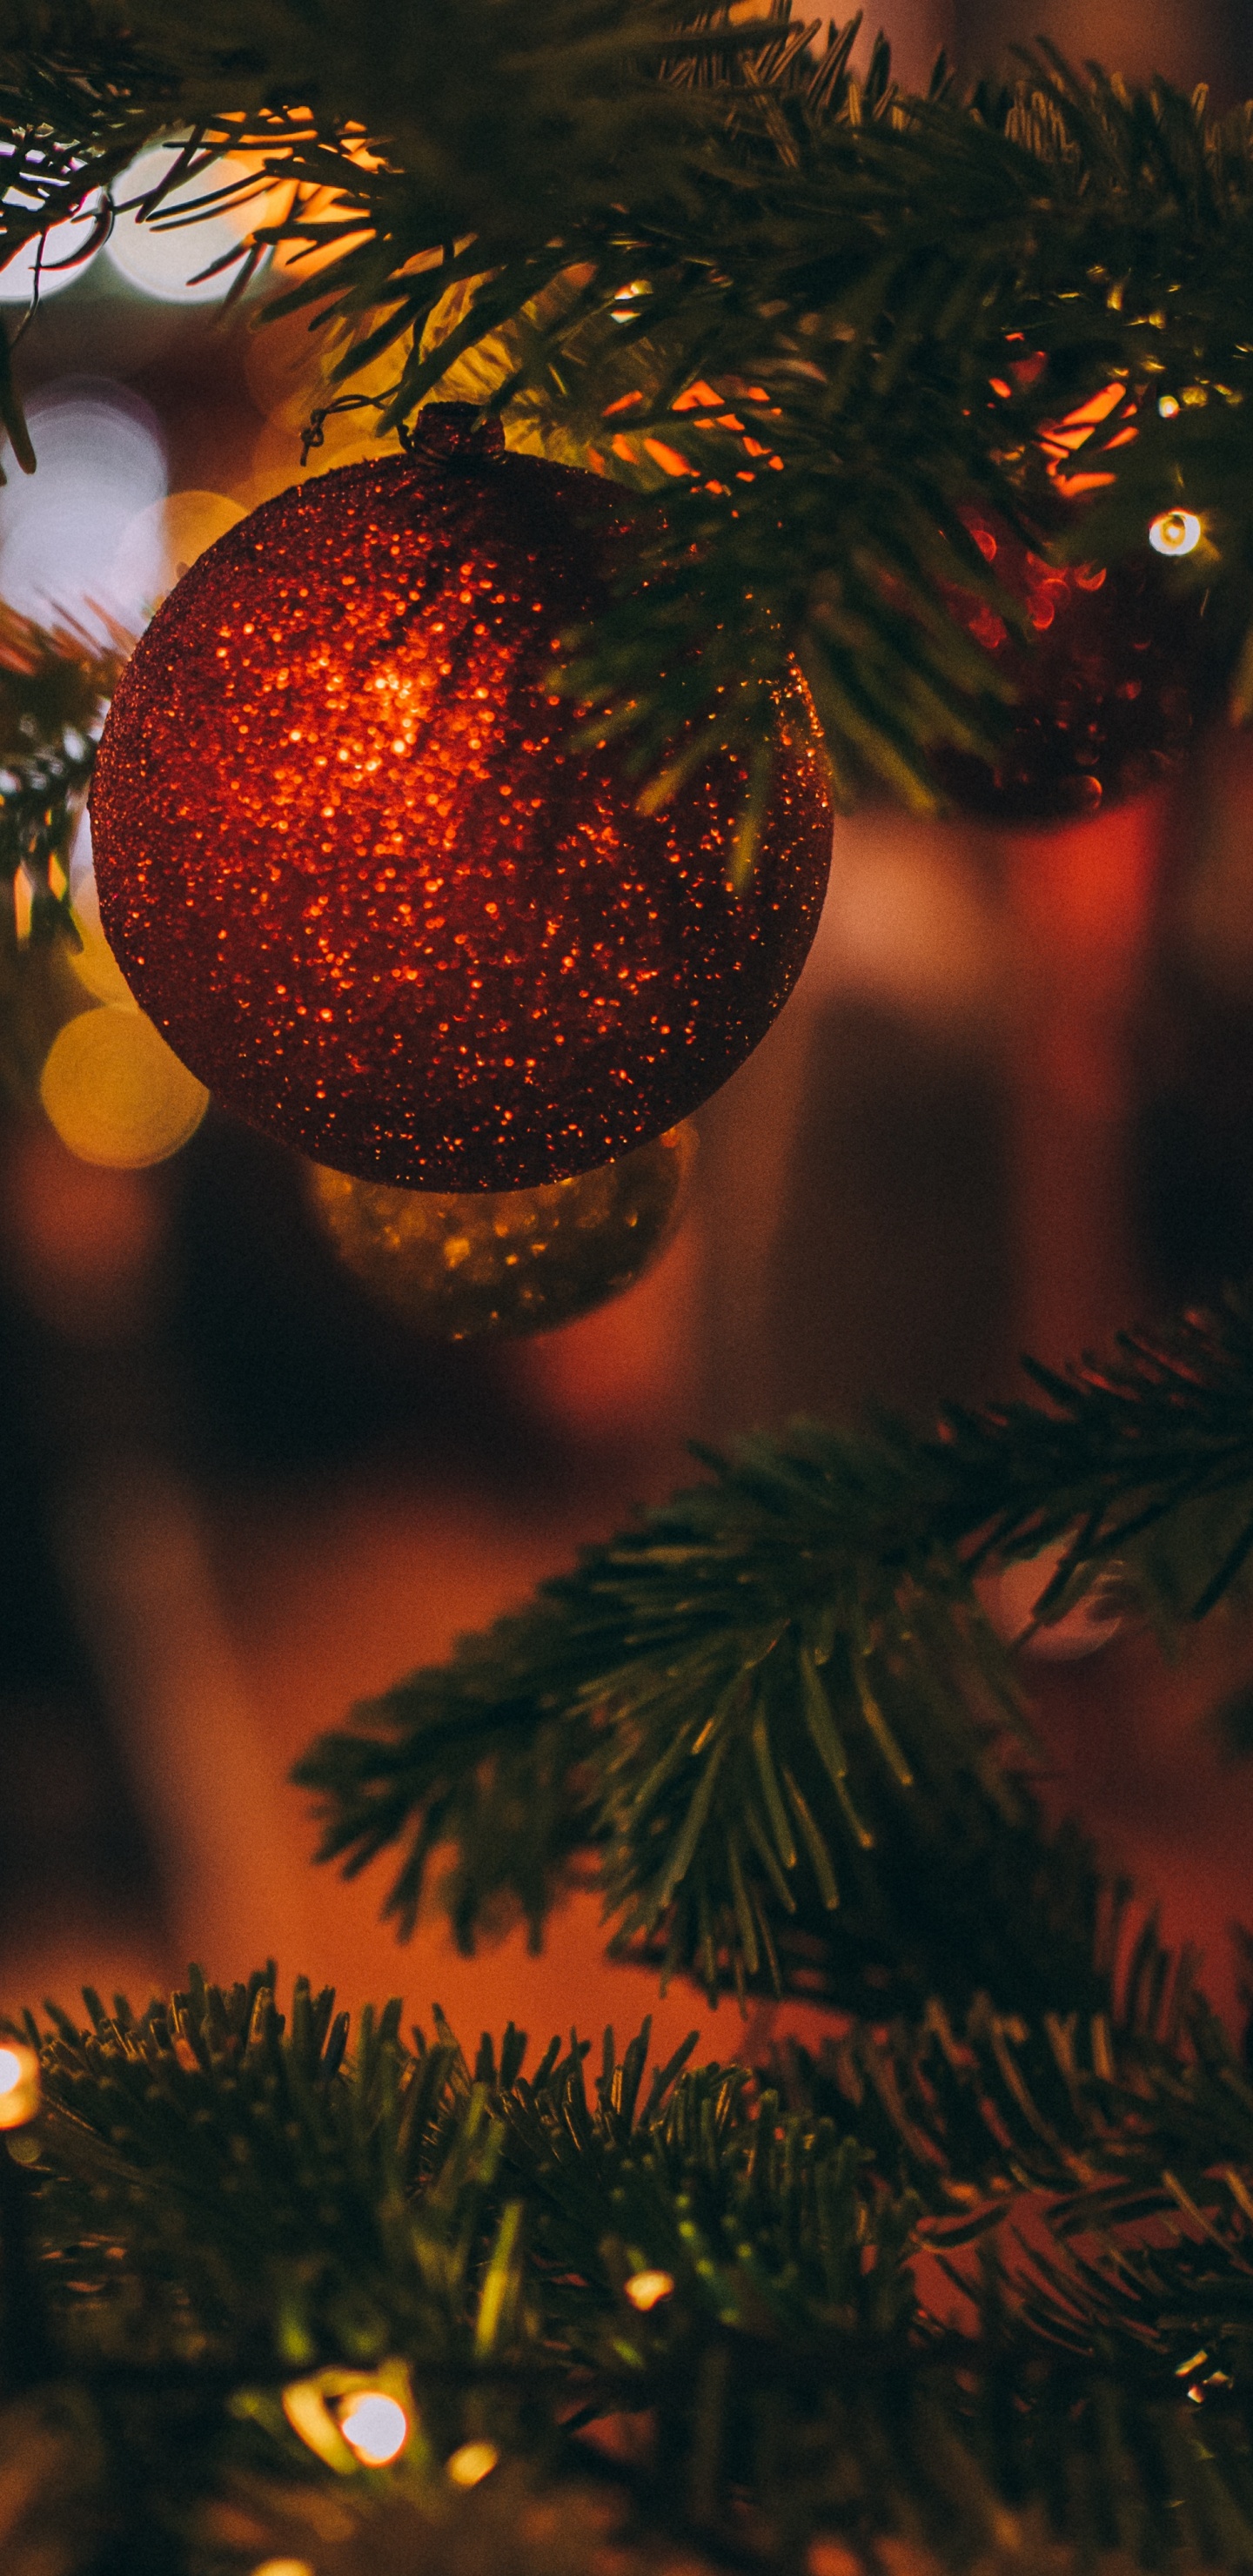 Weihnachten, Weihnachtsbaum, Baum, Christmas Ornament, Fichte. Wallpaper in 1440x2960 Resolution